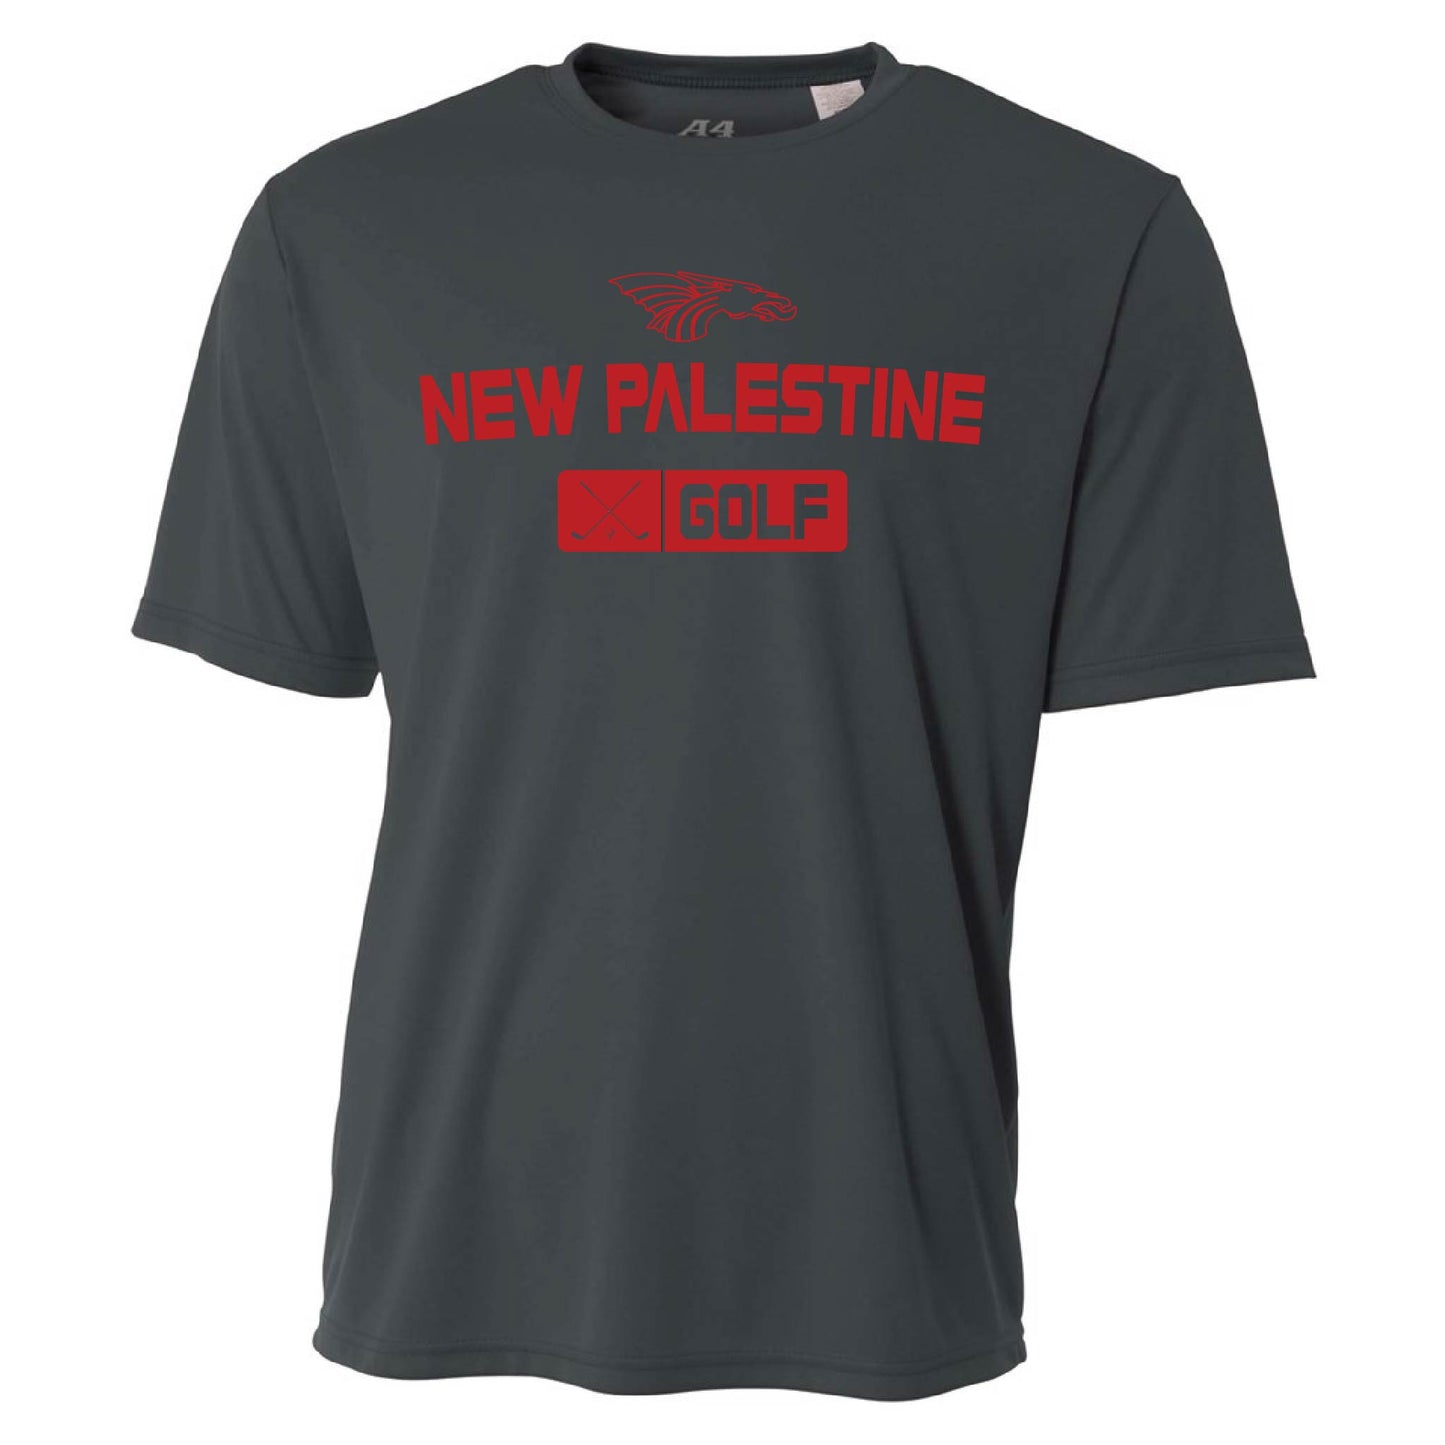 Mens S/S T-Shirt - New Palestine Golf